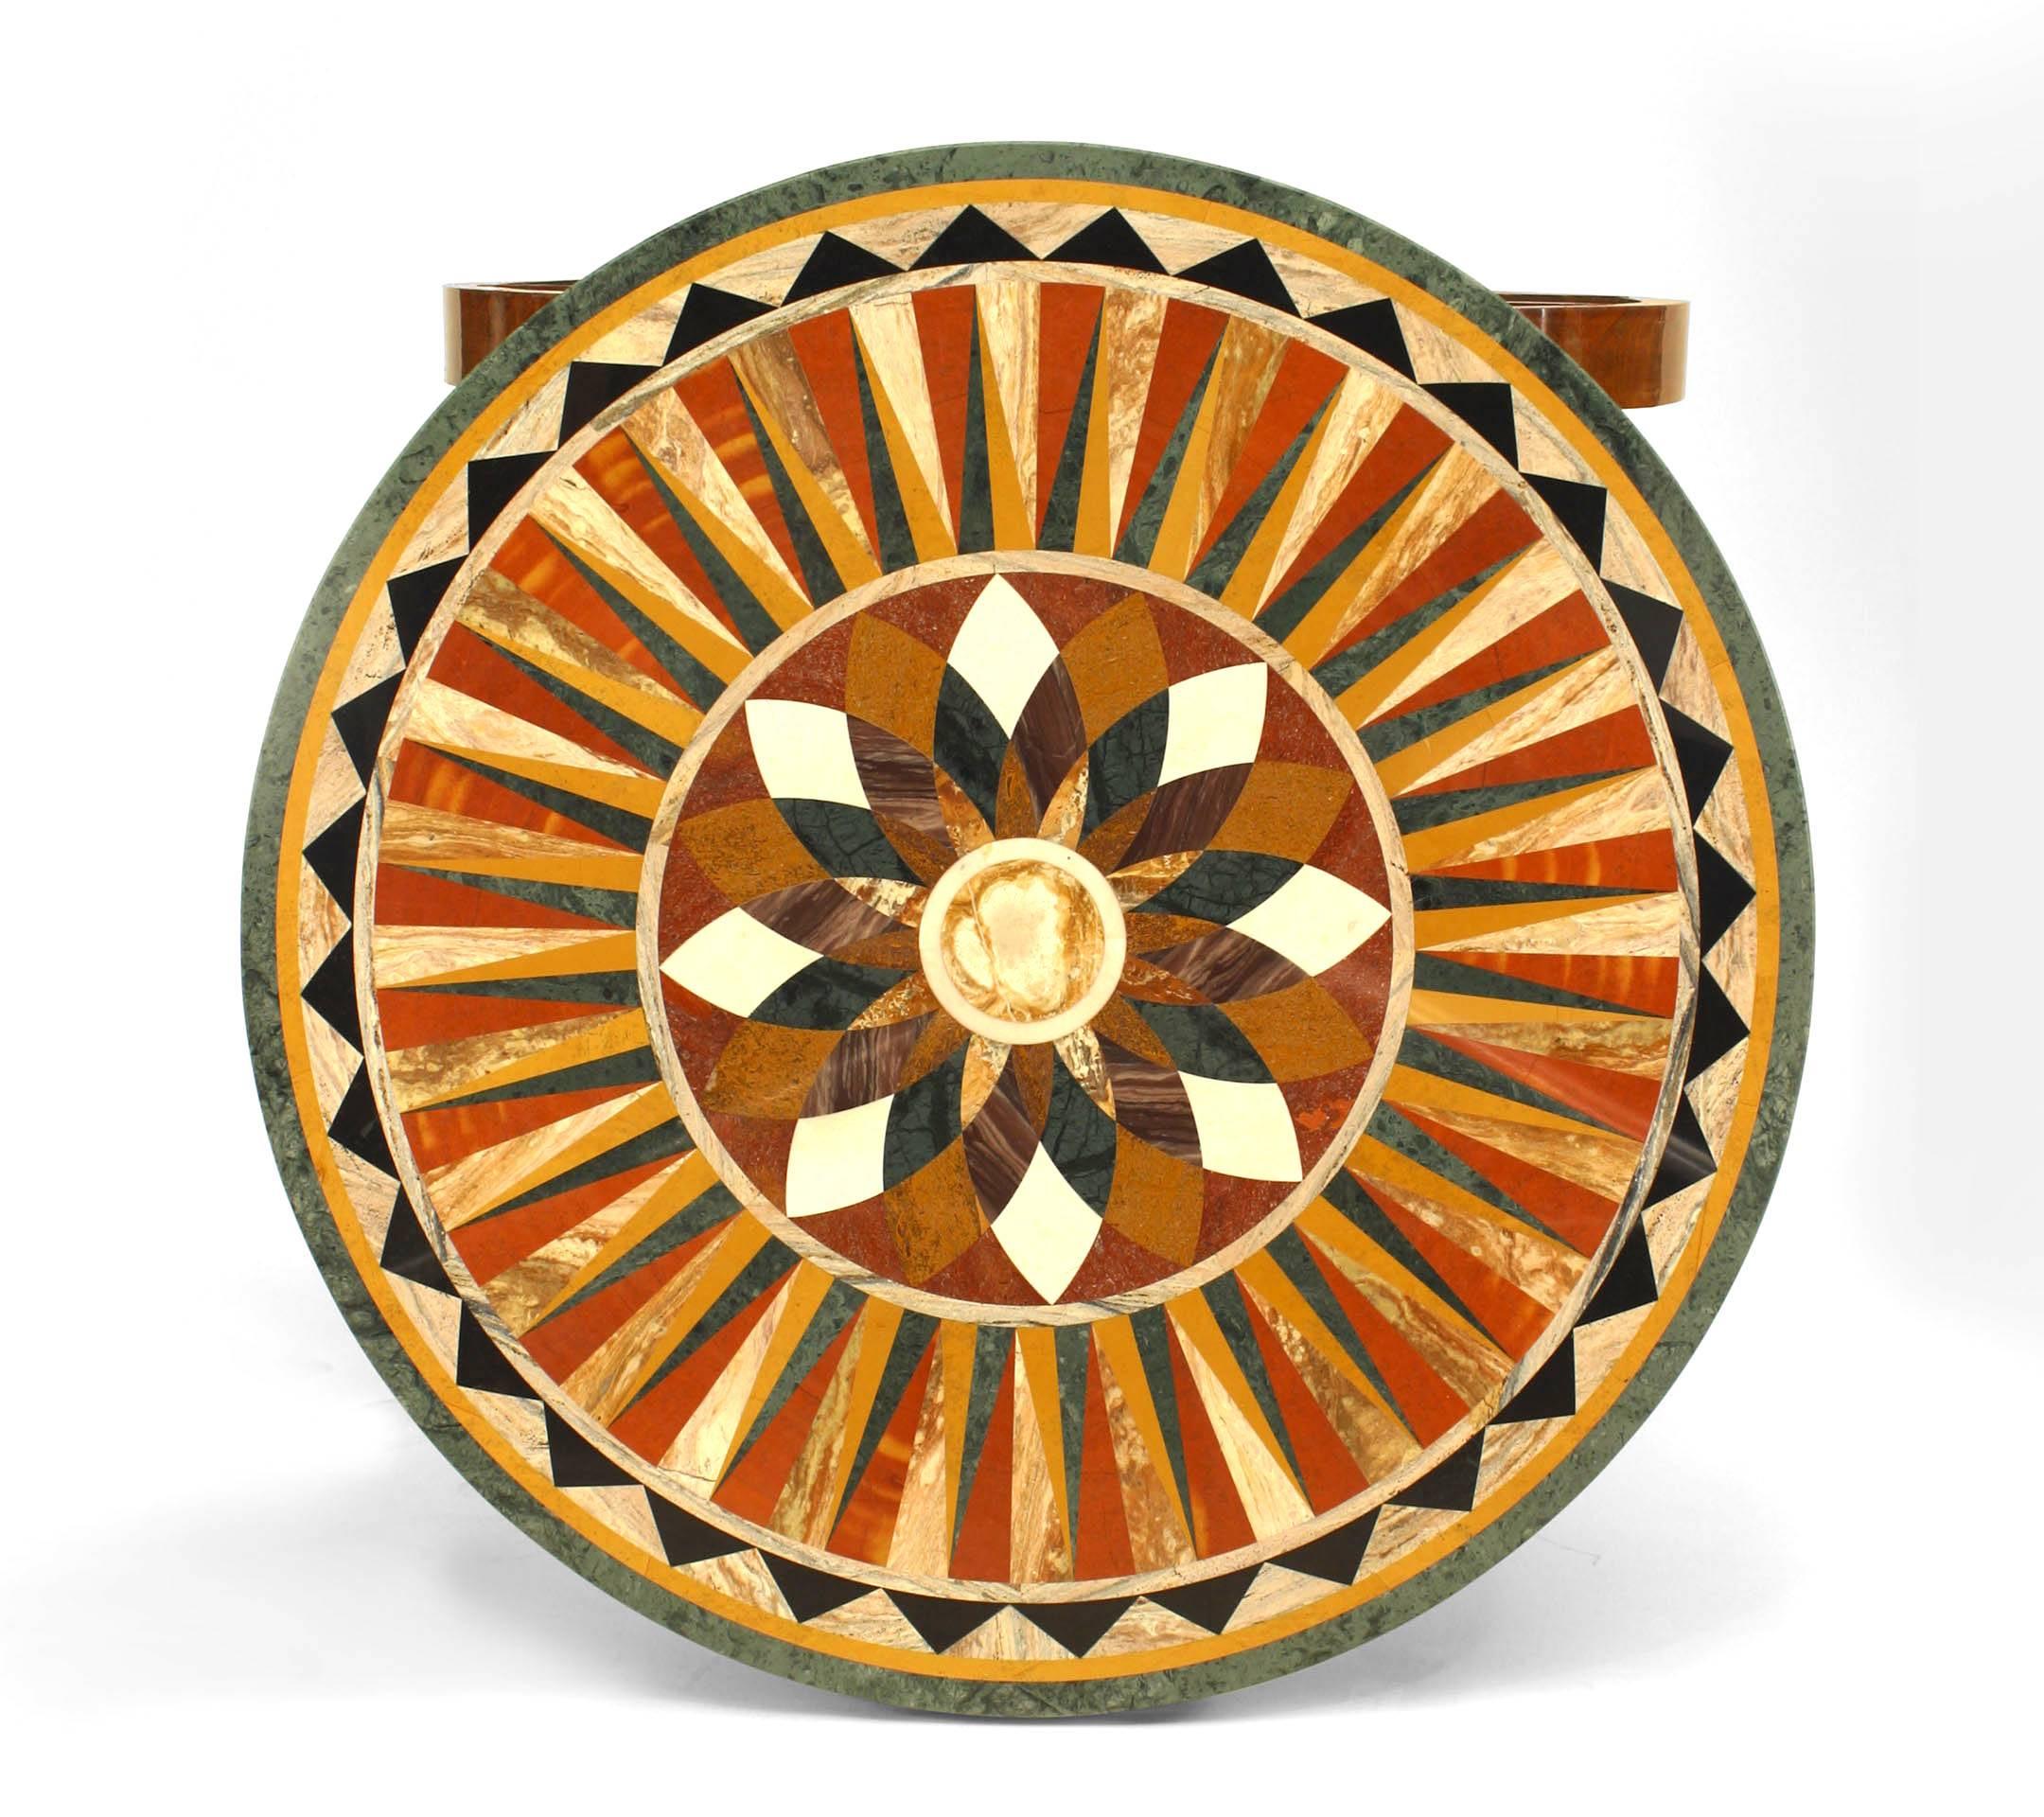 Runder Tisch im französischen Empire-Stil (19. Jahrhundert) aus Mahagoni und Bronze mit einer Platte aus eingelegtem Marmor, die auf einem Sockel ruht.
